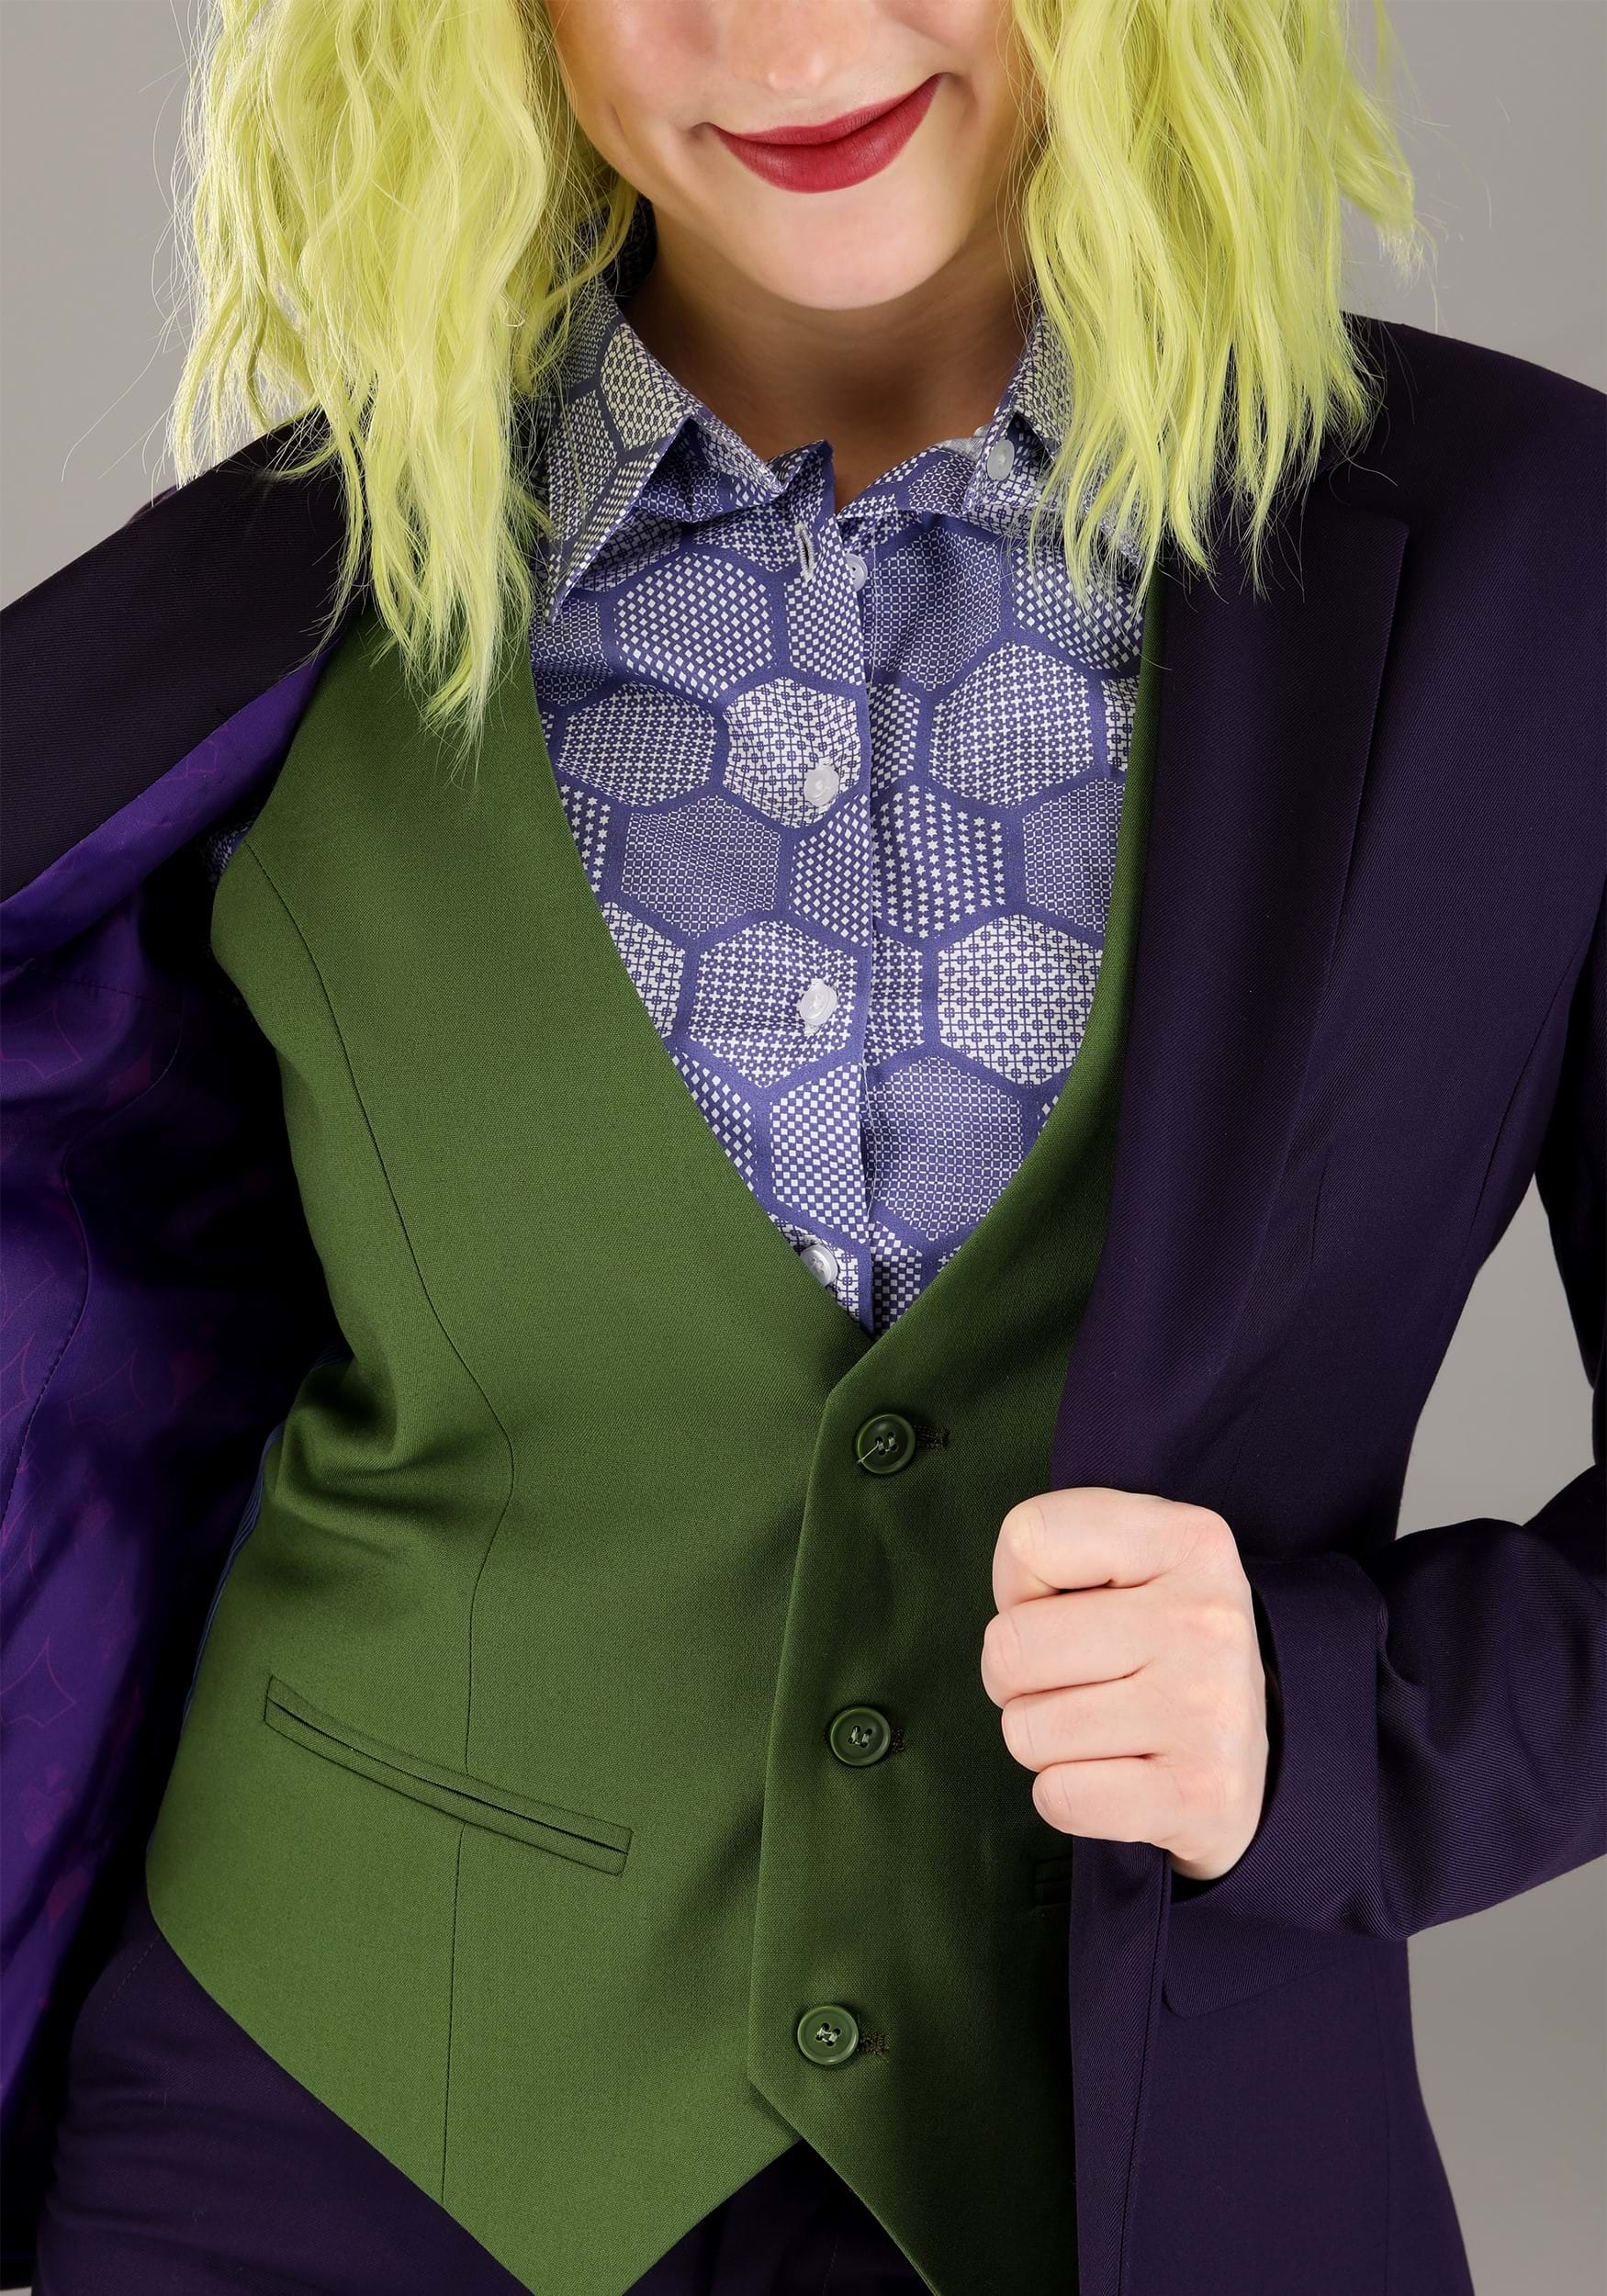 The Joker Women's Vest